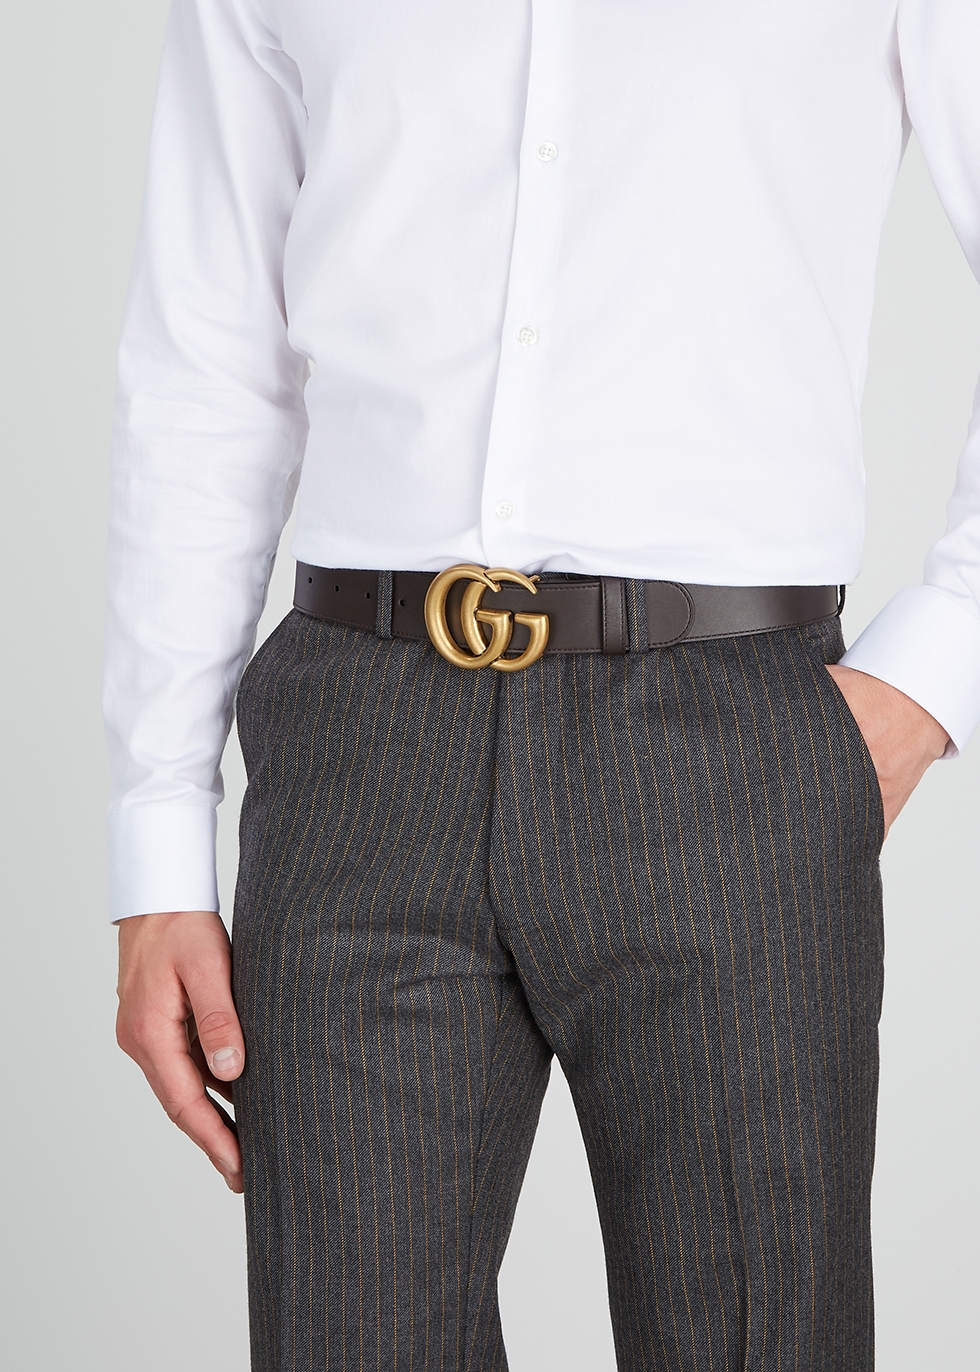 gucci belt suit